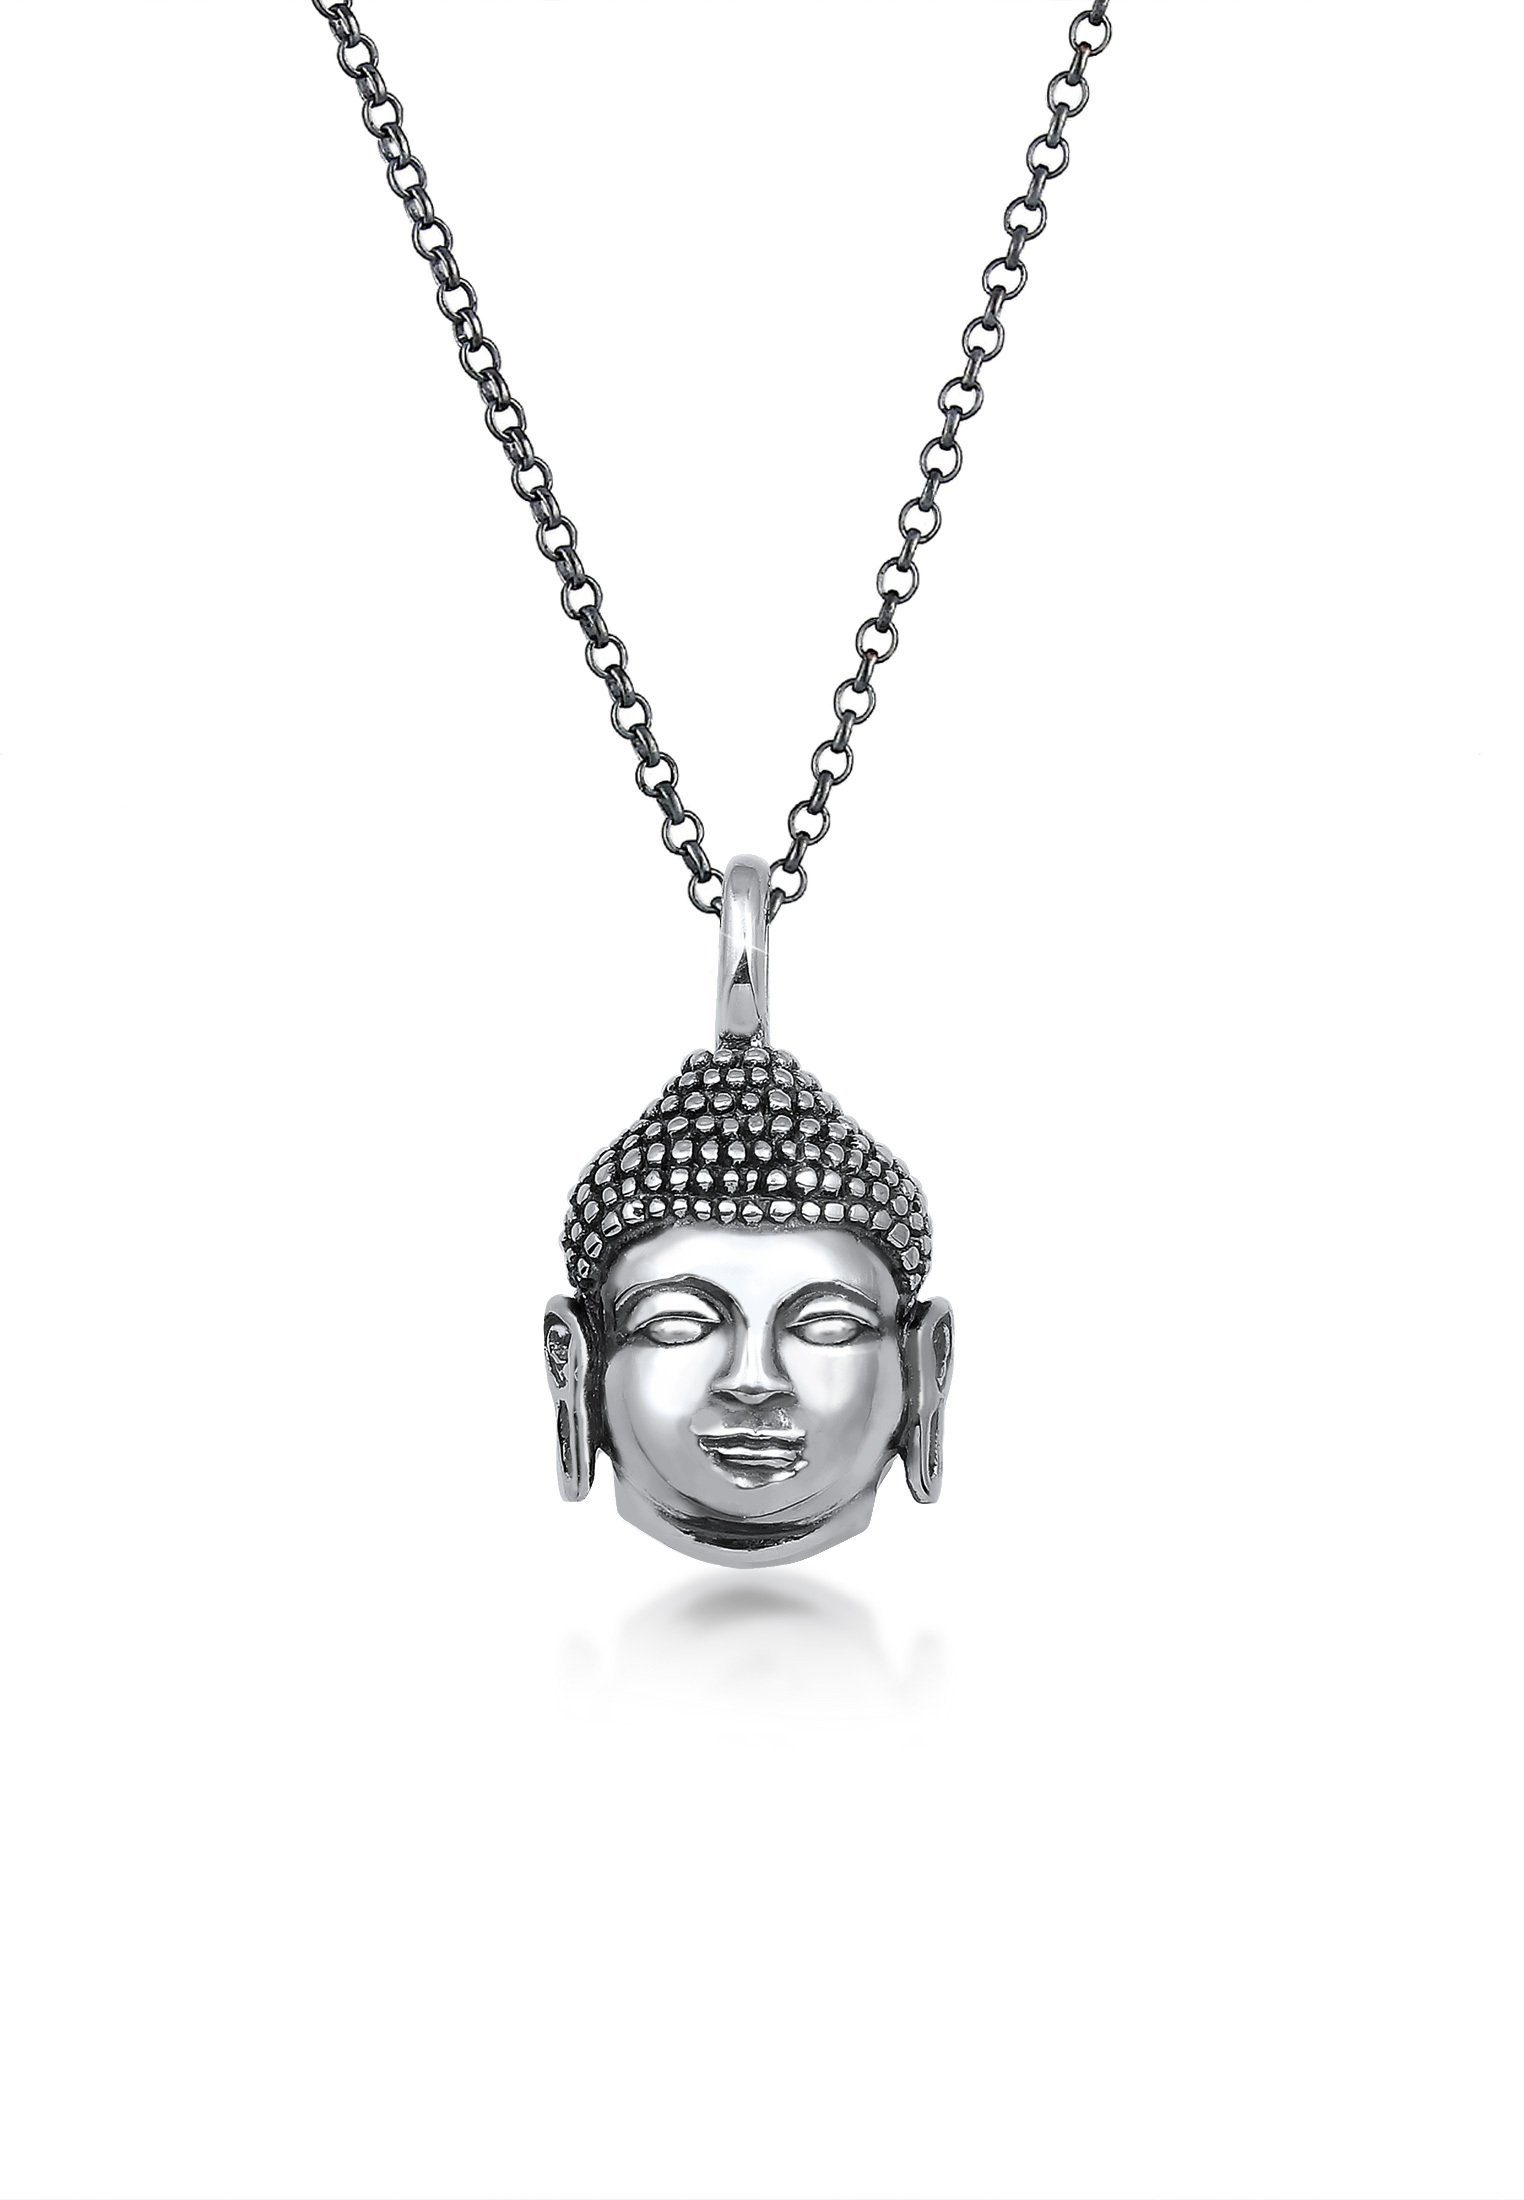 Kuzzoi Lange Kette Herren Anhänger Buddha Kopf Oxidiert 925 Silber